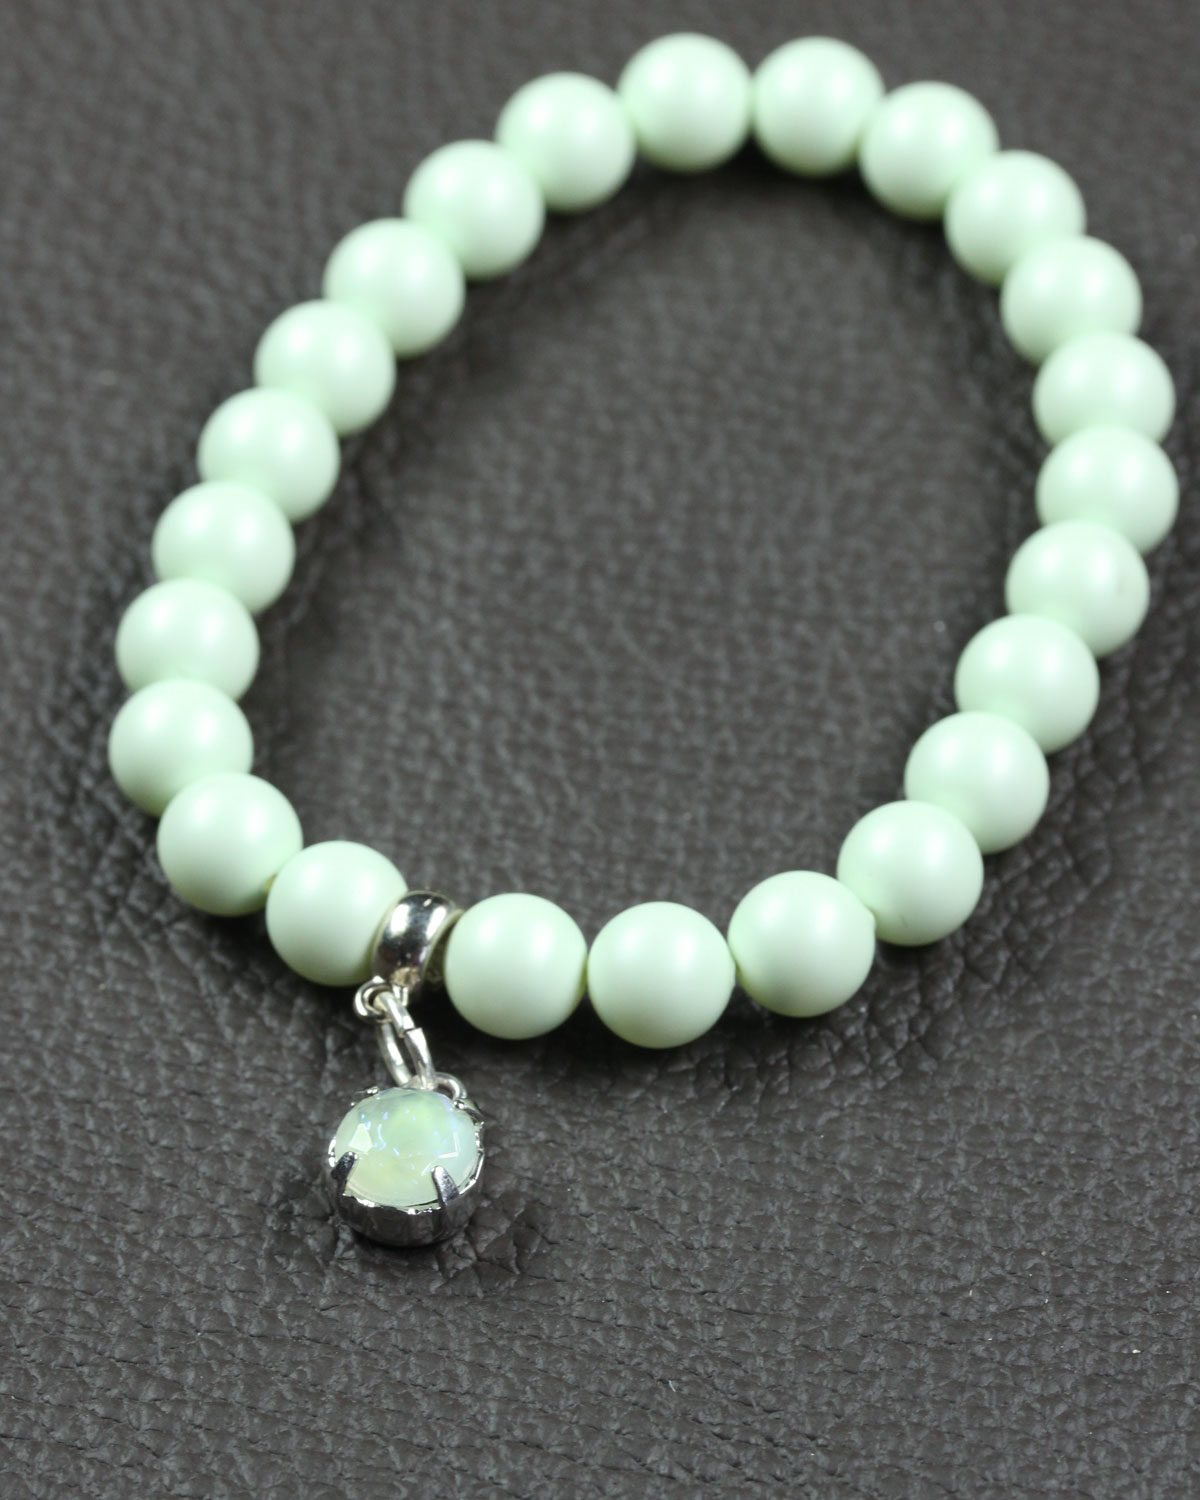 Pastel green swarovski bracelet with glass charm